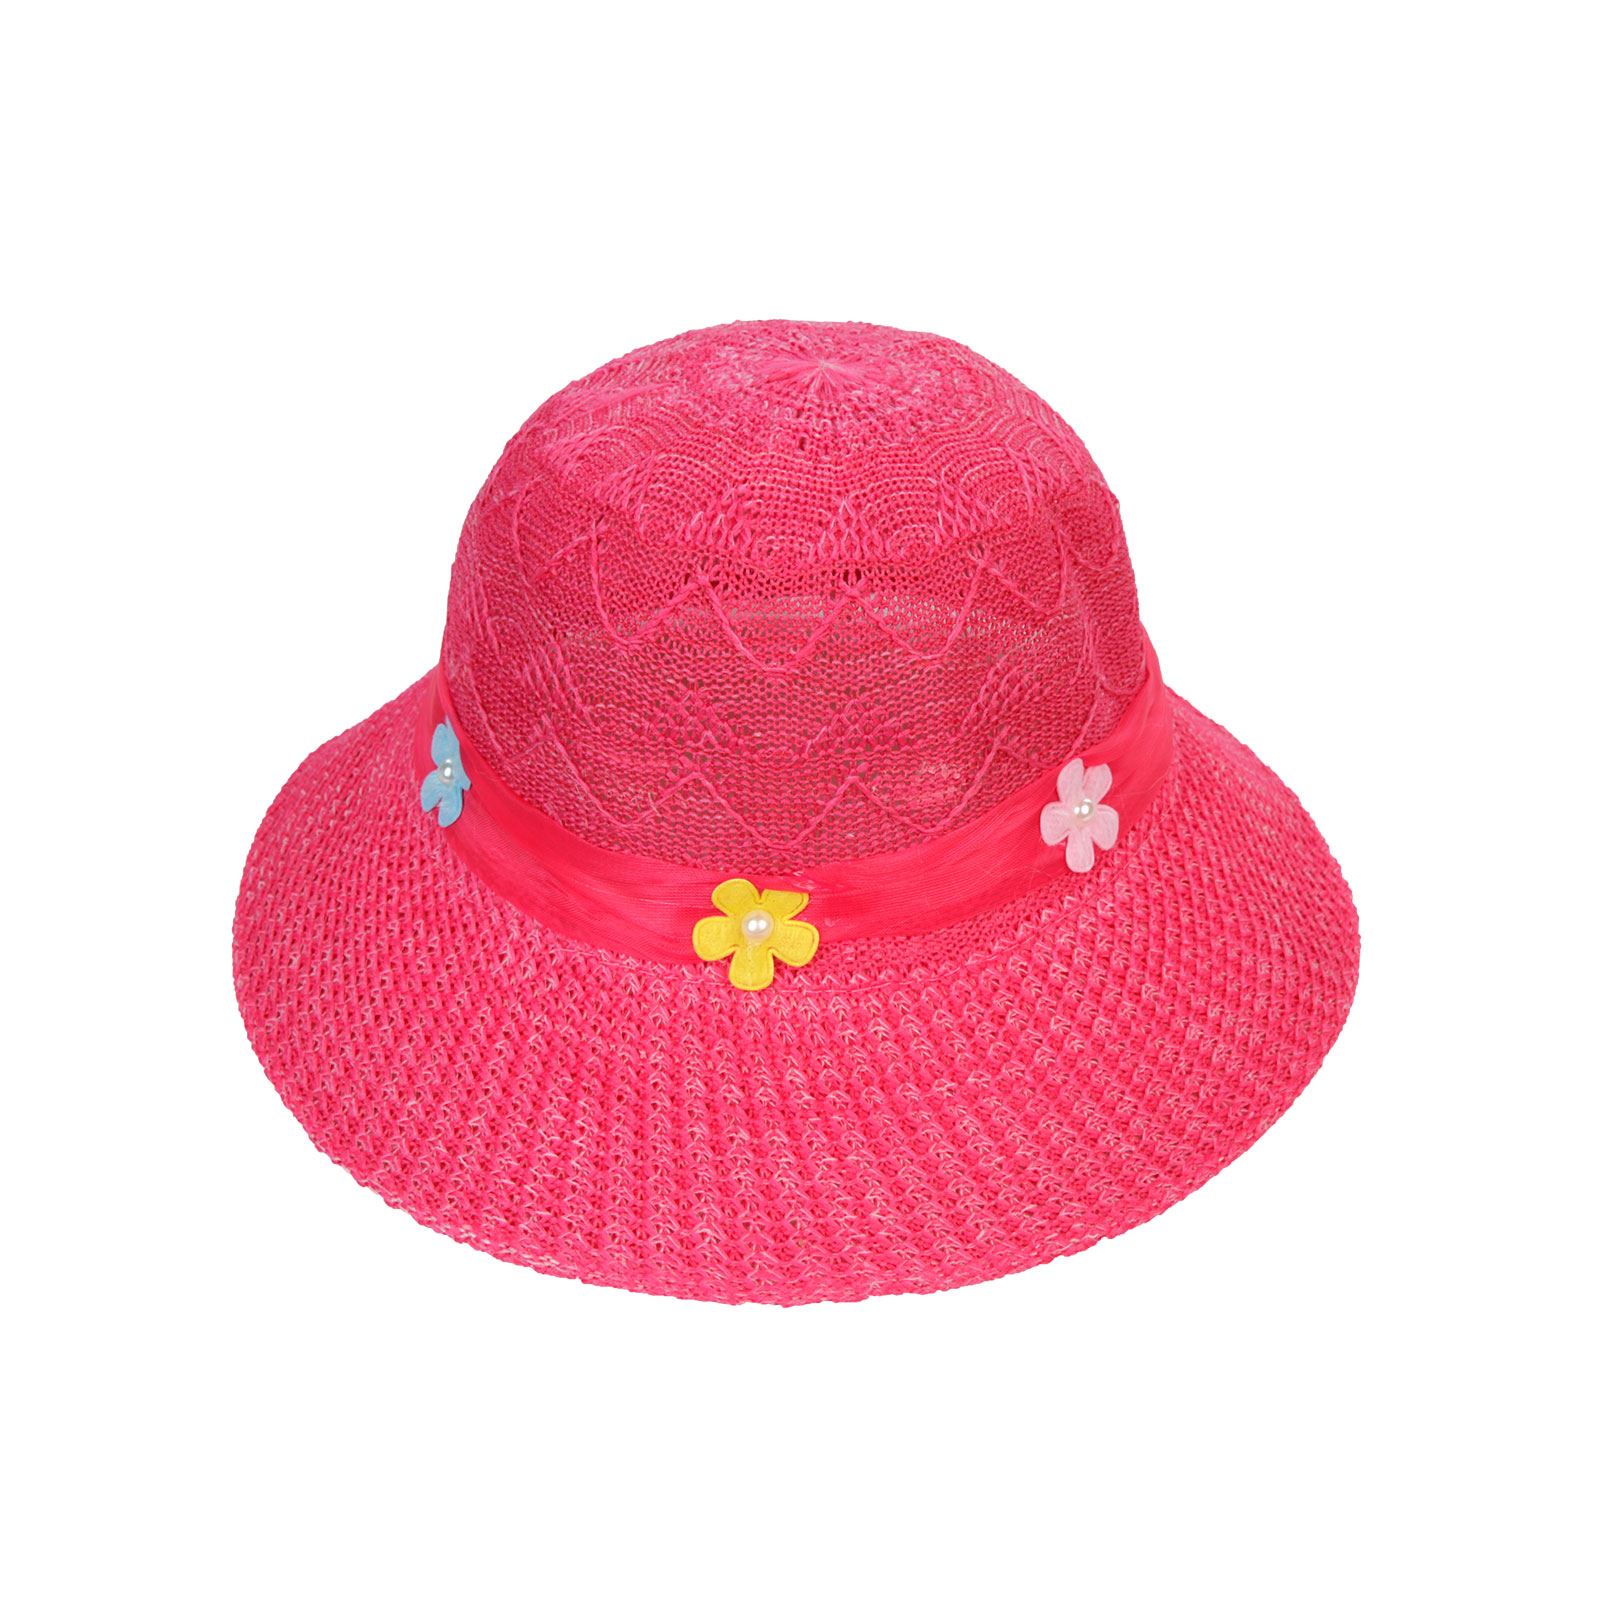 Keep Kids Kız Çocuk Merserize Hasır Şapka 6-12 Yaş Fuşya